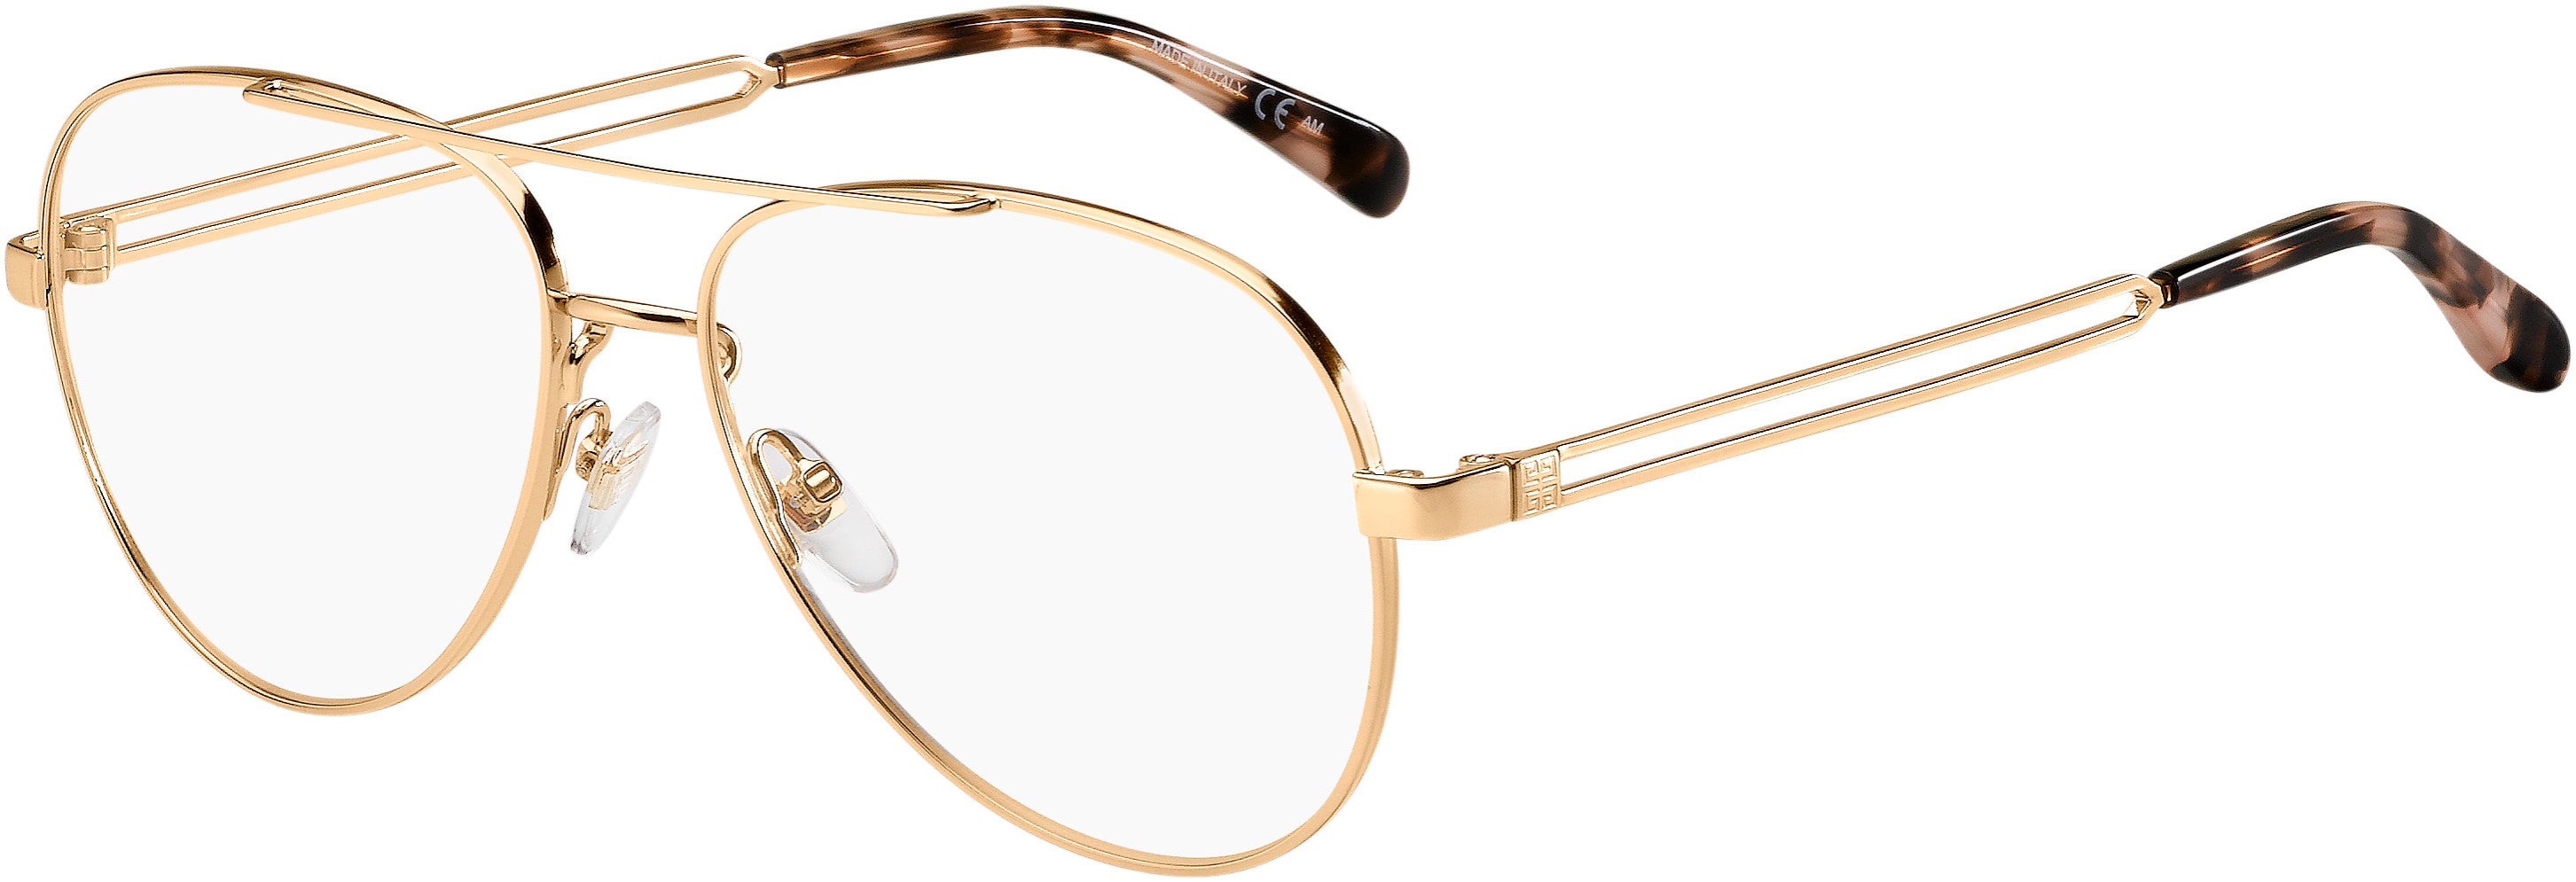  Givenchy 0095 Aviator Eyeglasses 0DDB-0DDB  Gold Copper (00 Demo Lens)